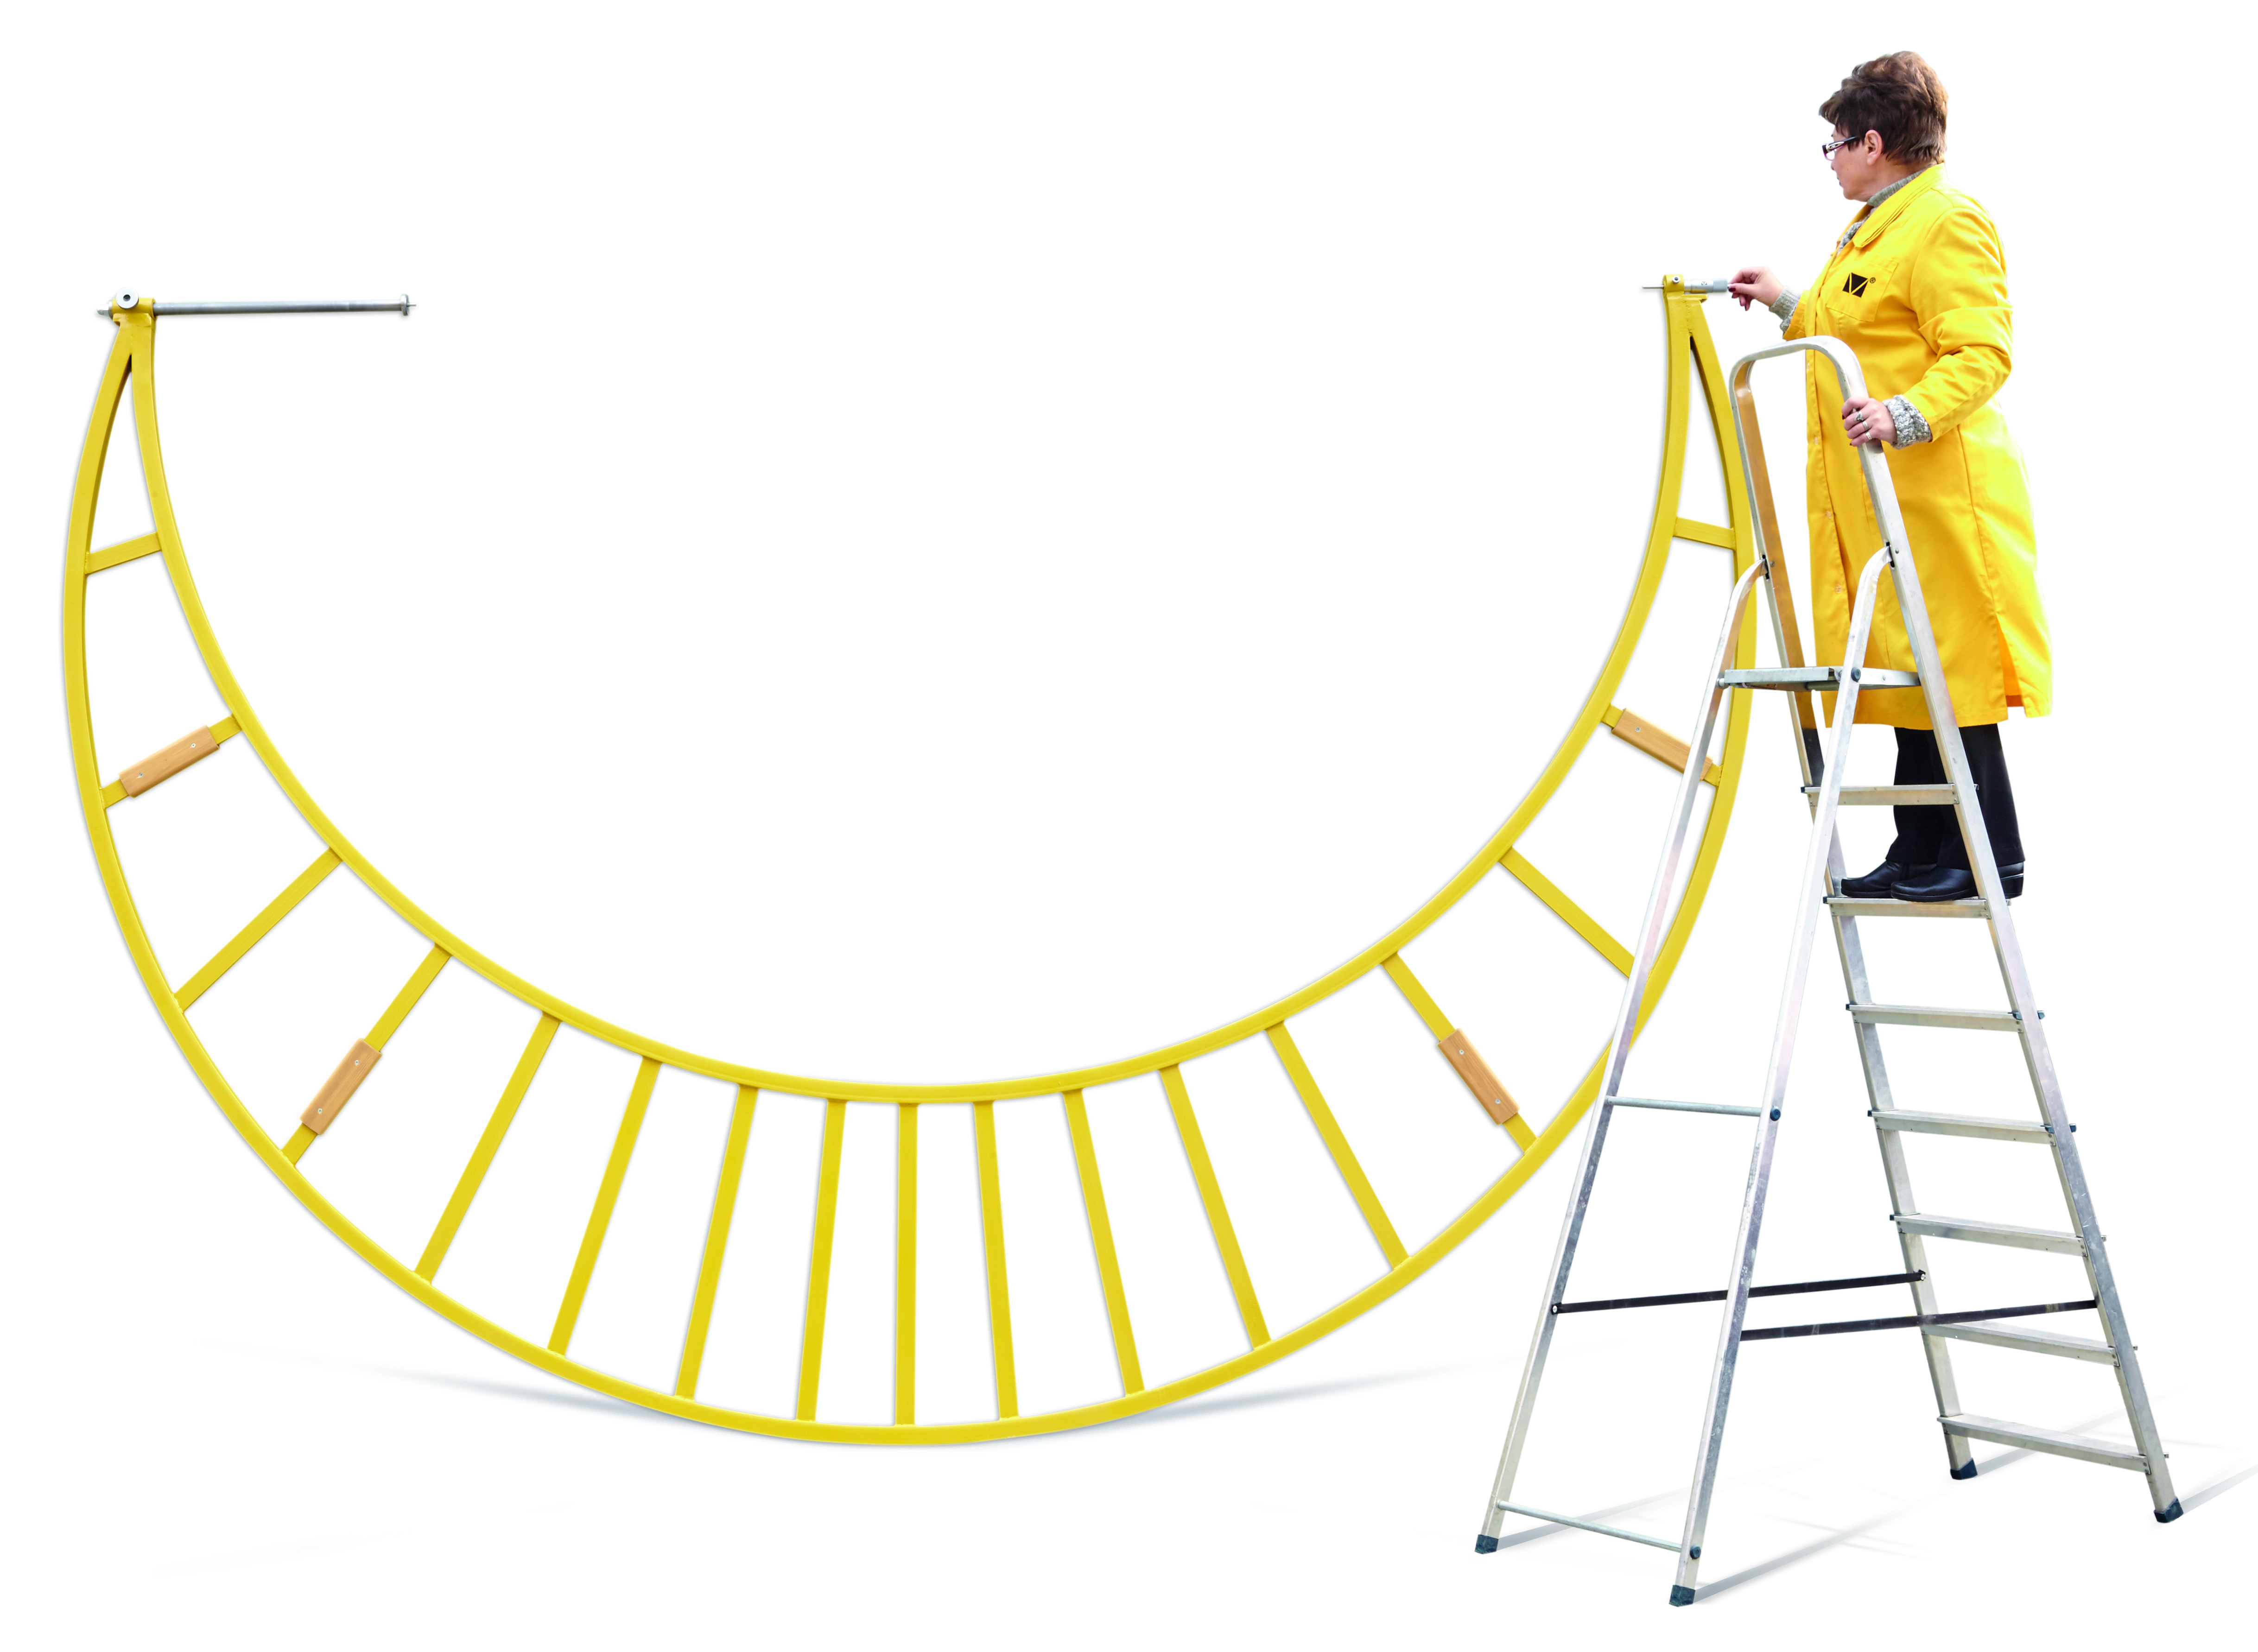 Gelbe Bügelmessschraube auf weißem Hintergrund. Daneben steht eine Frau auf einer Treppe. Das Hilft die Größe der Bügelmessschraube einzuschätzen. 